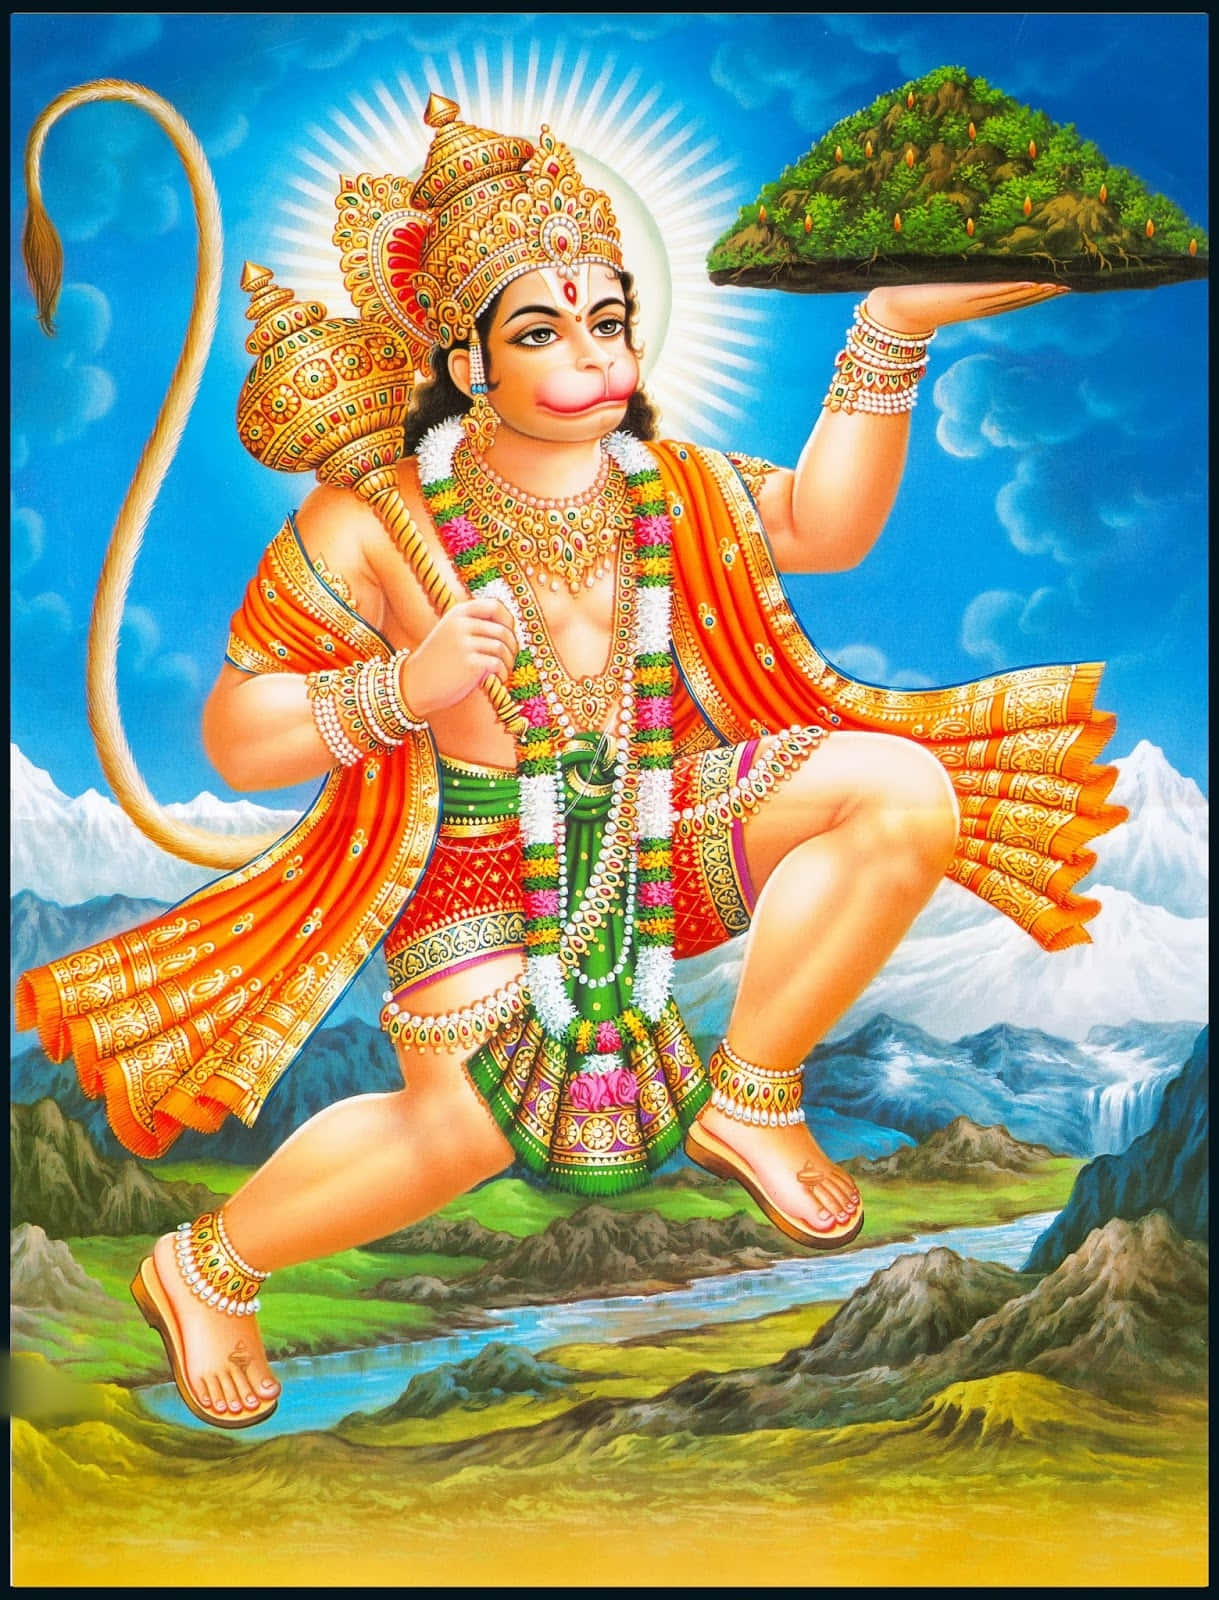 Imagende La Montaña Del Dios Hindú Hanuman